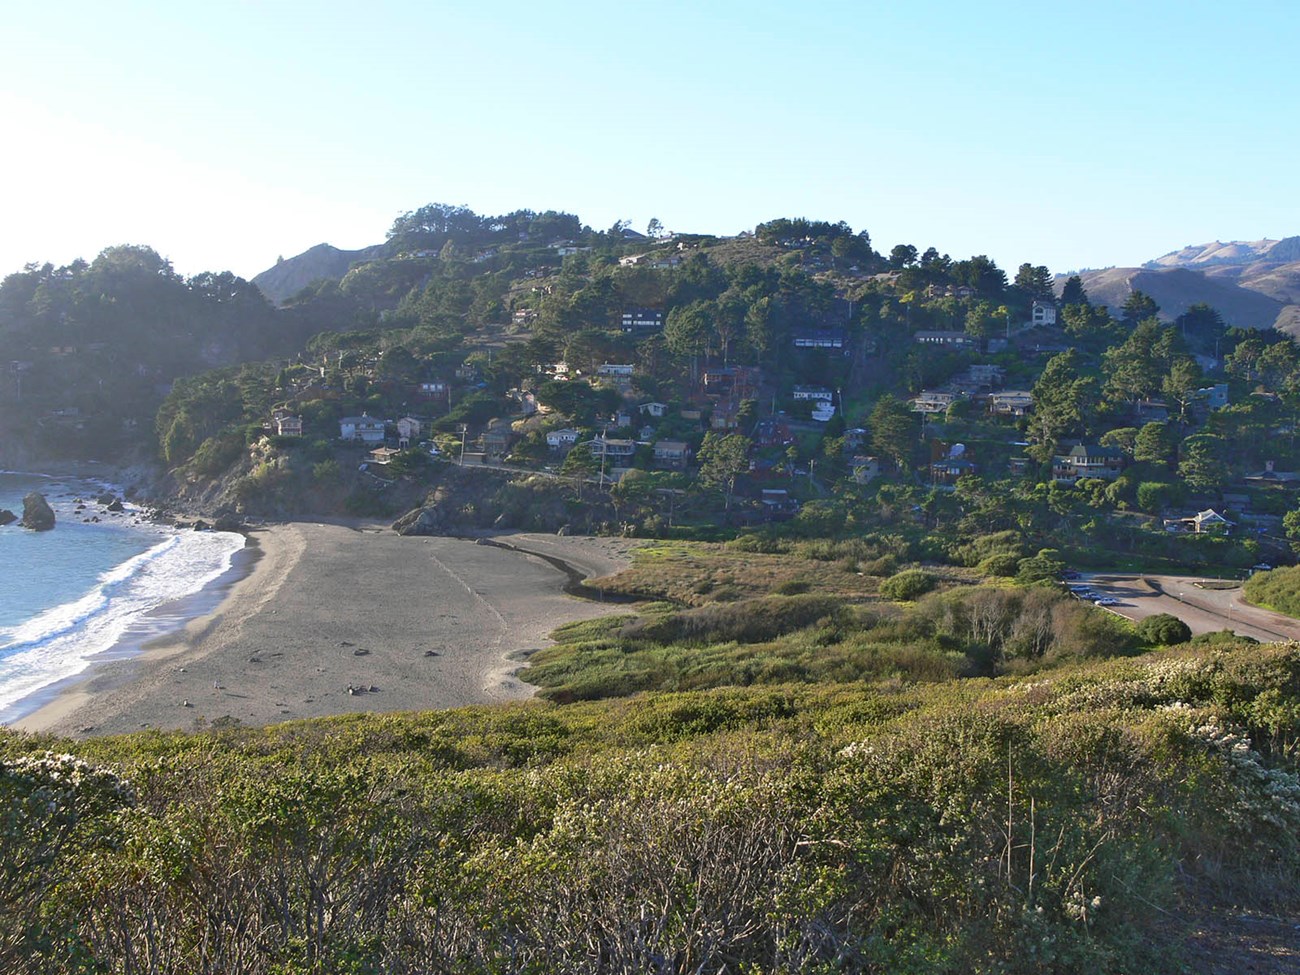 Landscape shot of Muir Beach